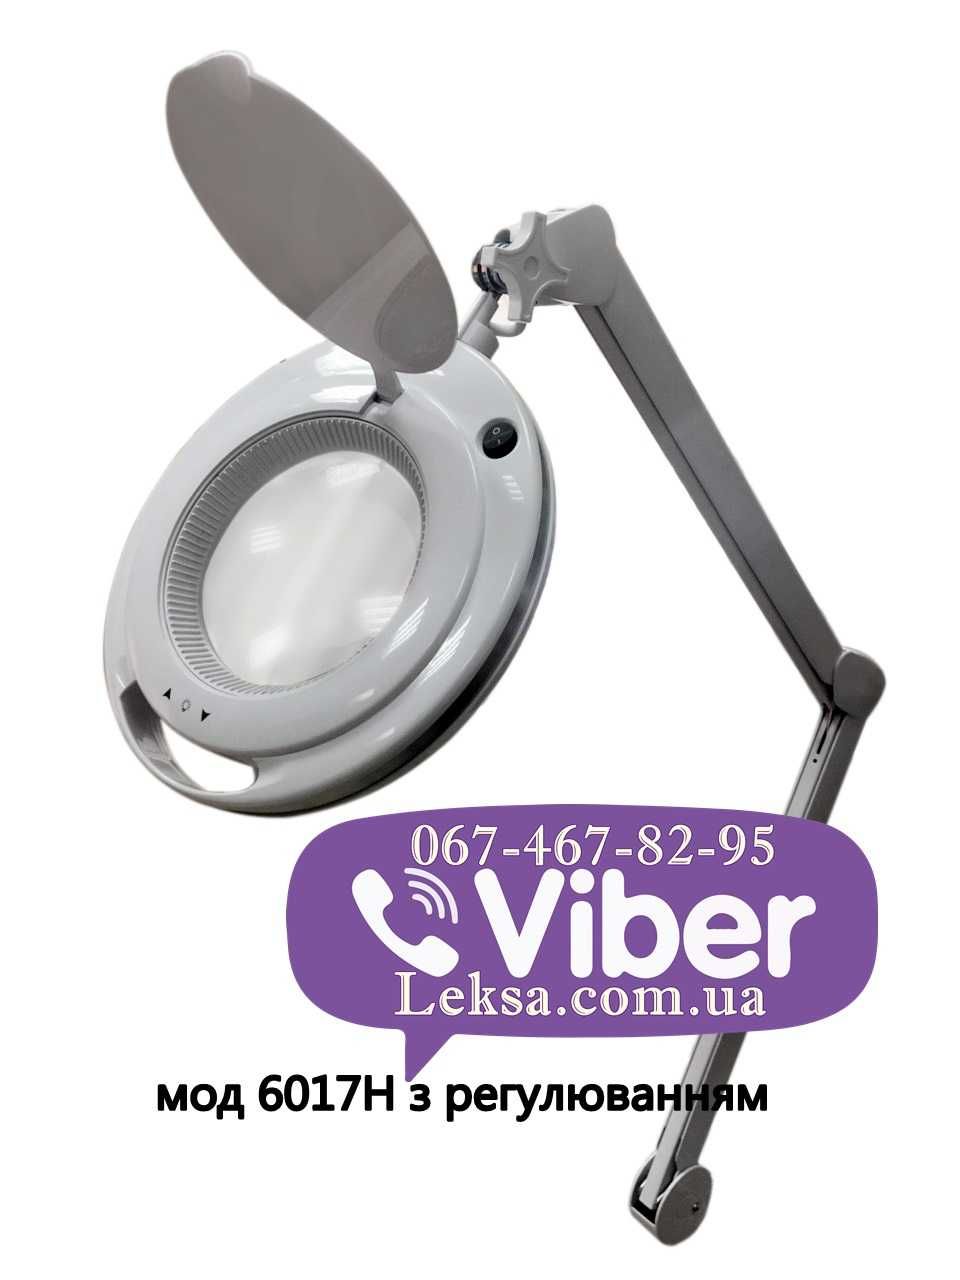 Лампа лупа с LED подсветкой, Доставка по Украине, наложка, Сертификат